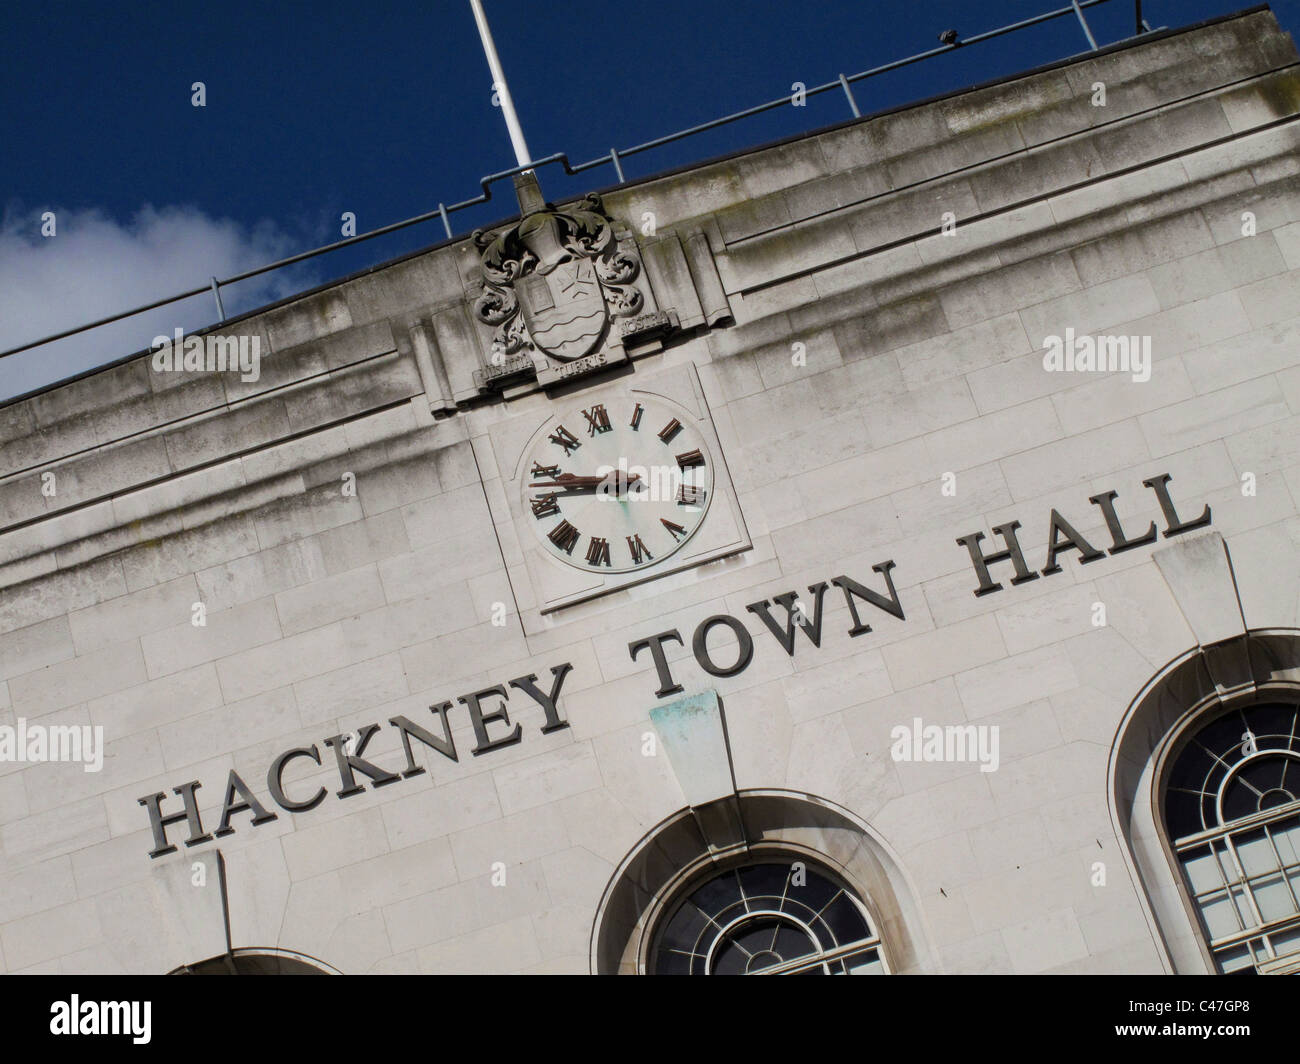 Hackney Town Hall, Hackney, London Stock Photo